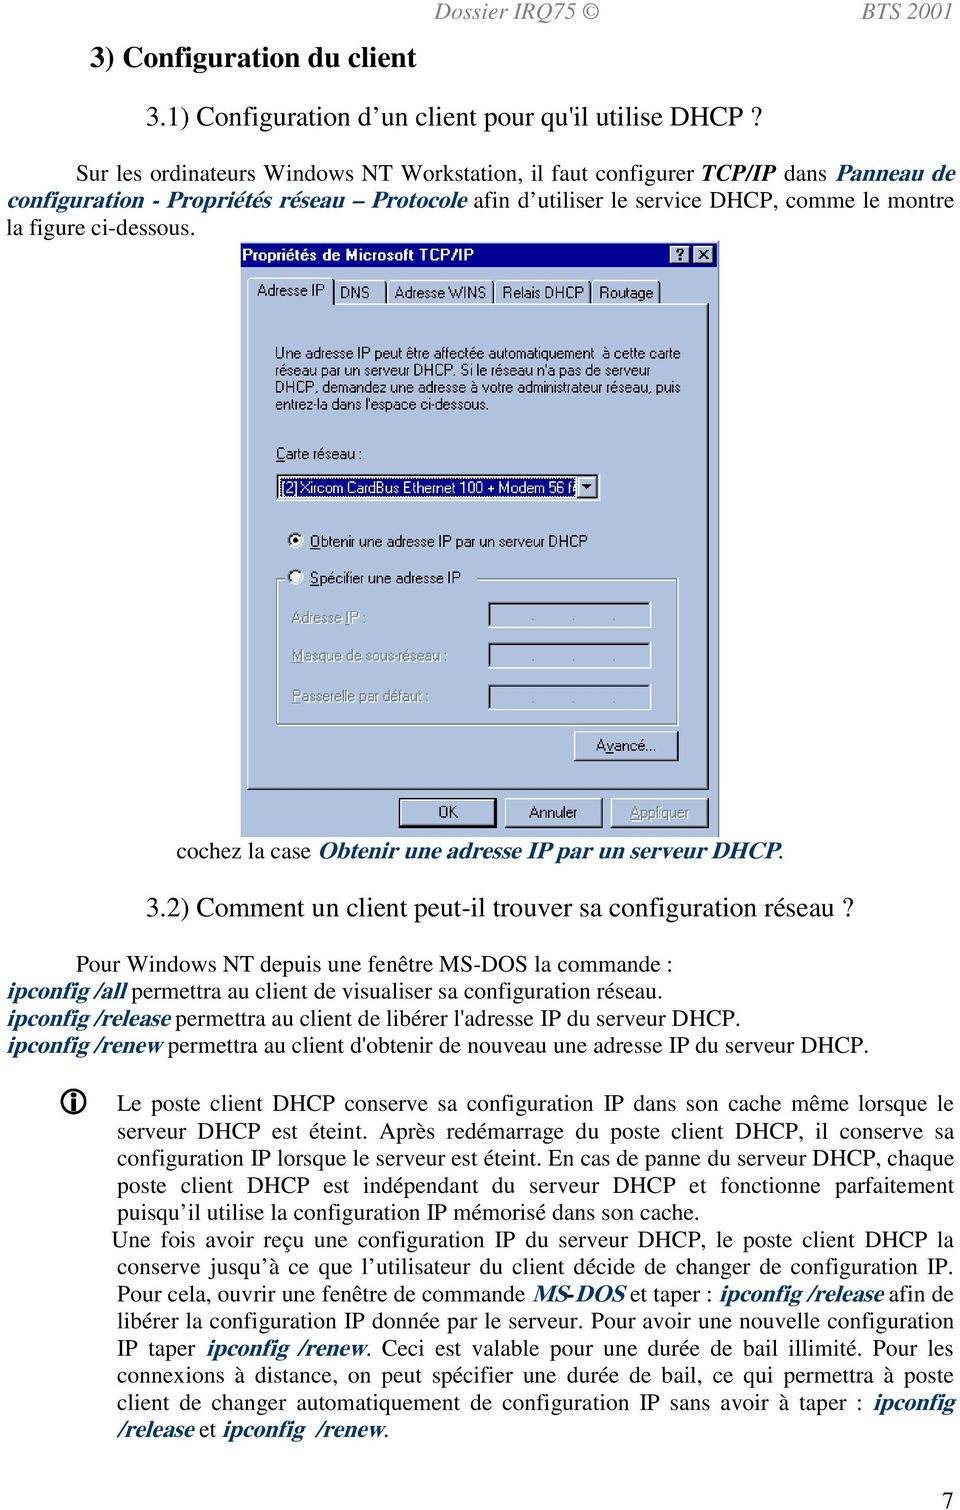 cochez la case Obtenir une adresse IP par un serveur DHCP. 3.2) Comment un client peut-il trouver sa configuration réseau?